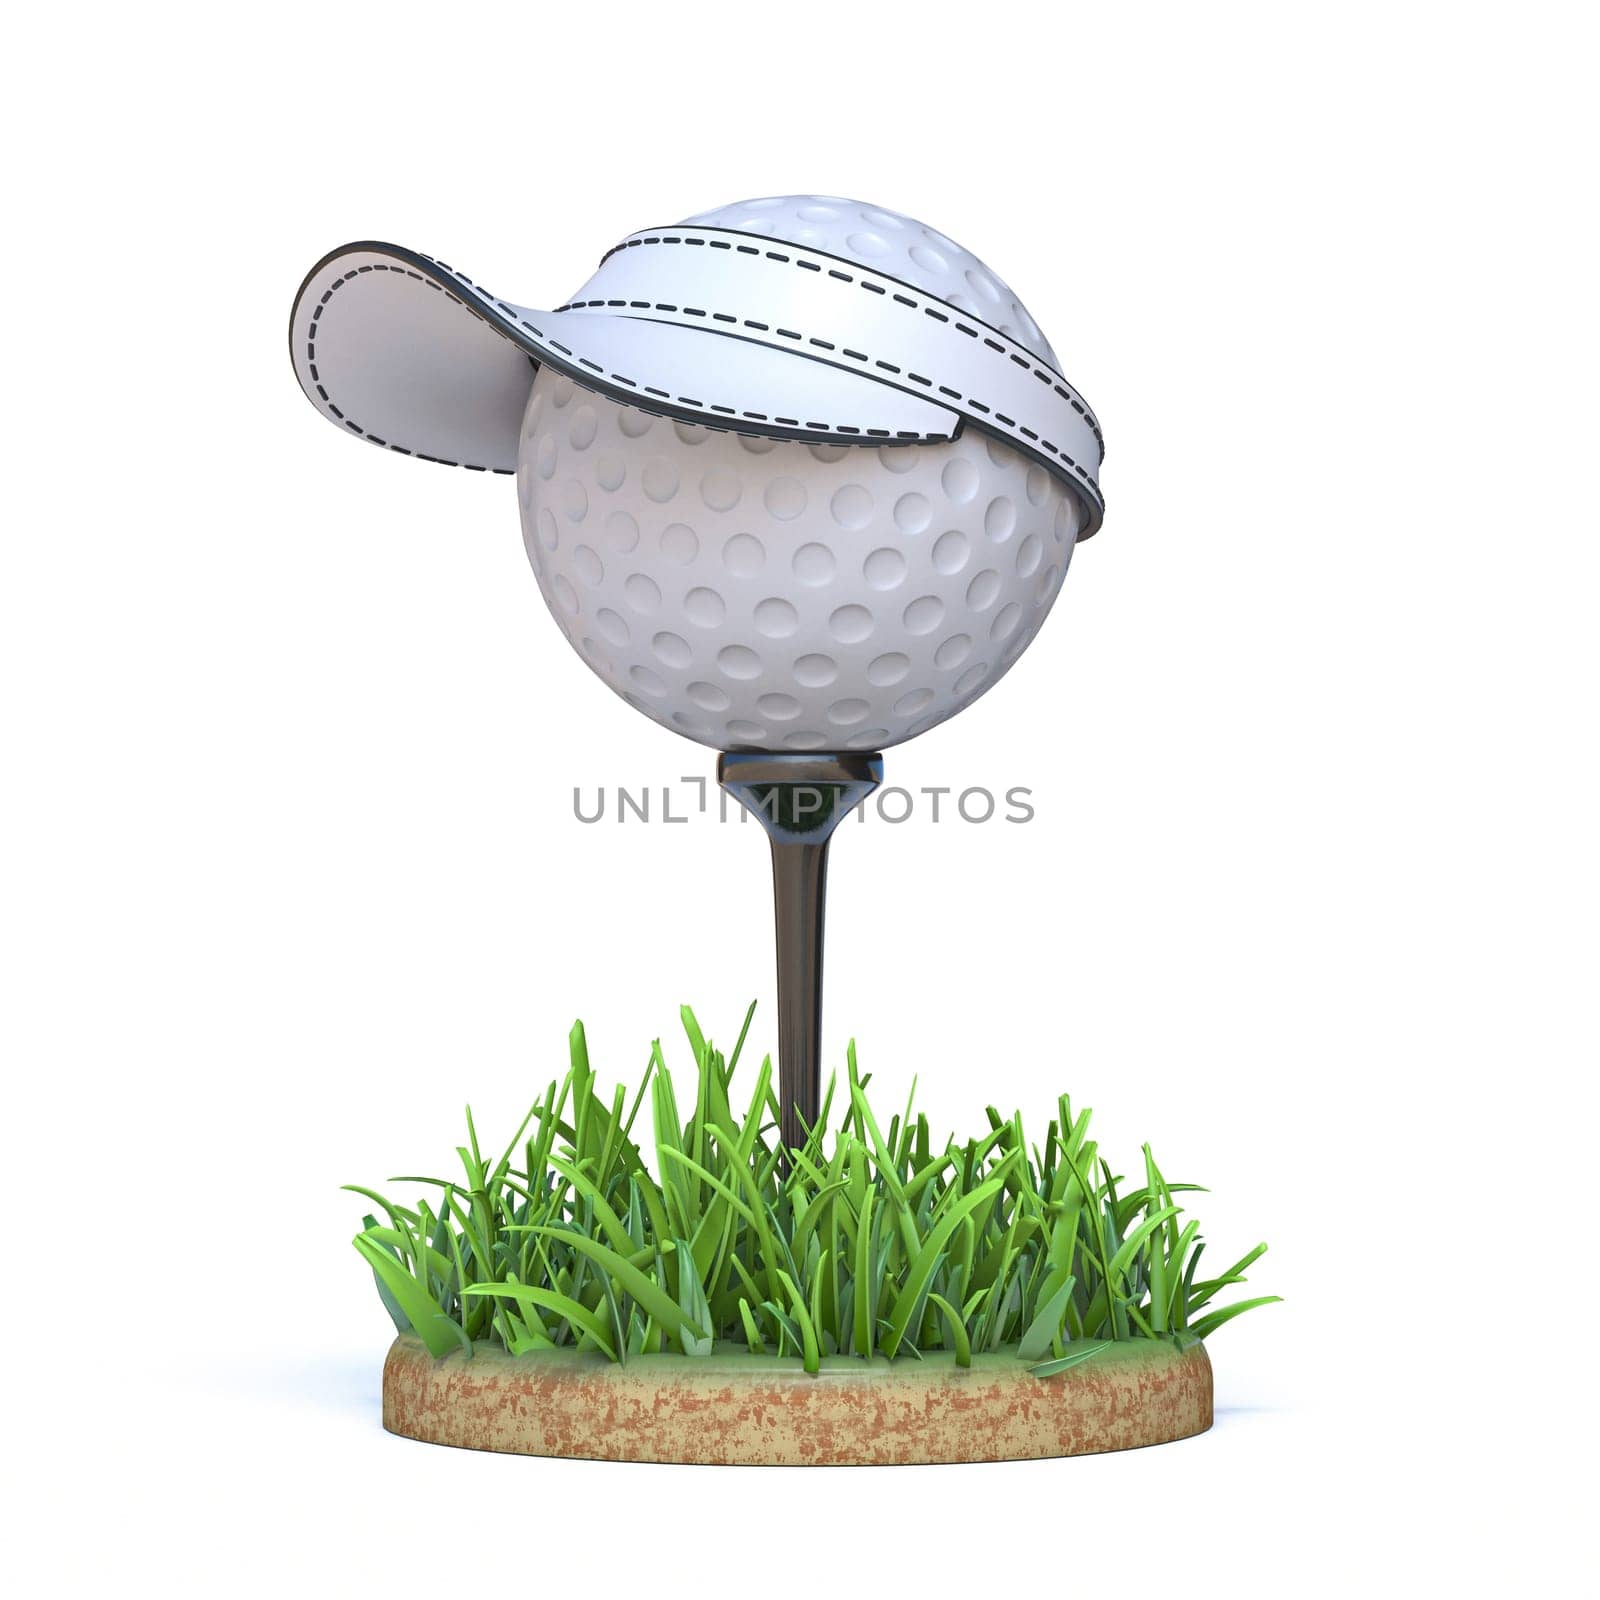 Golf ball wearing cap 3D by djmilic